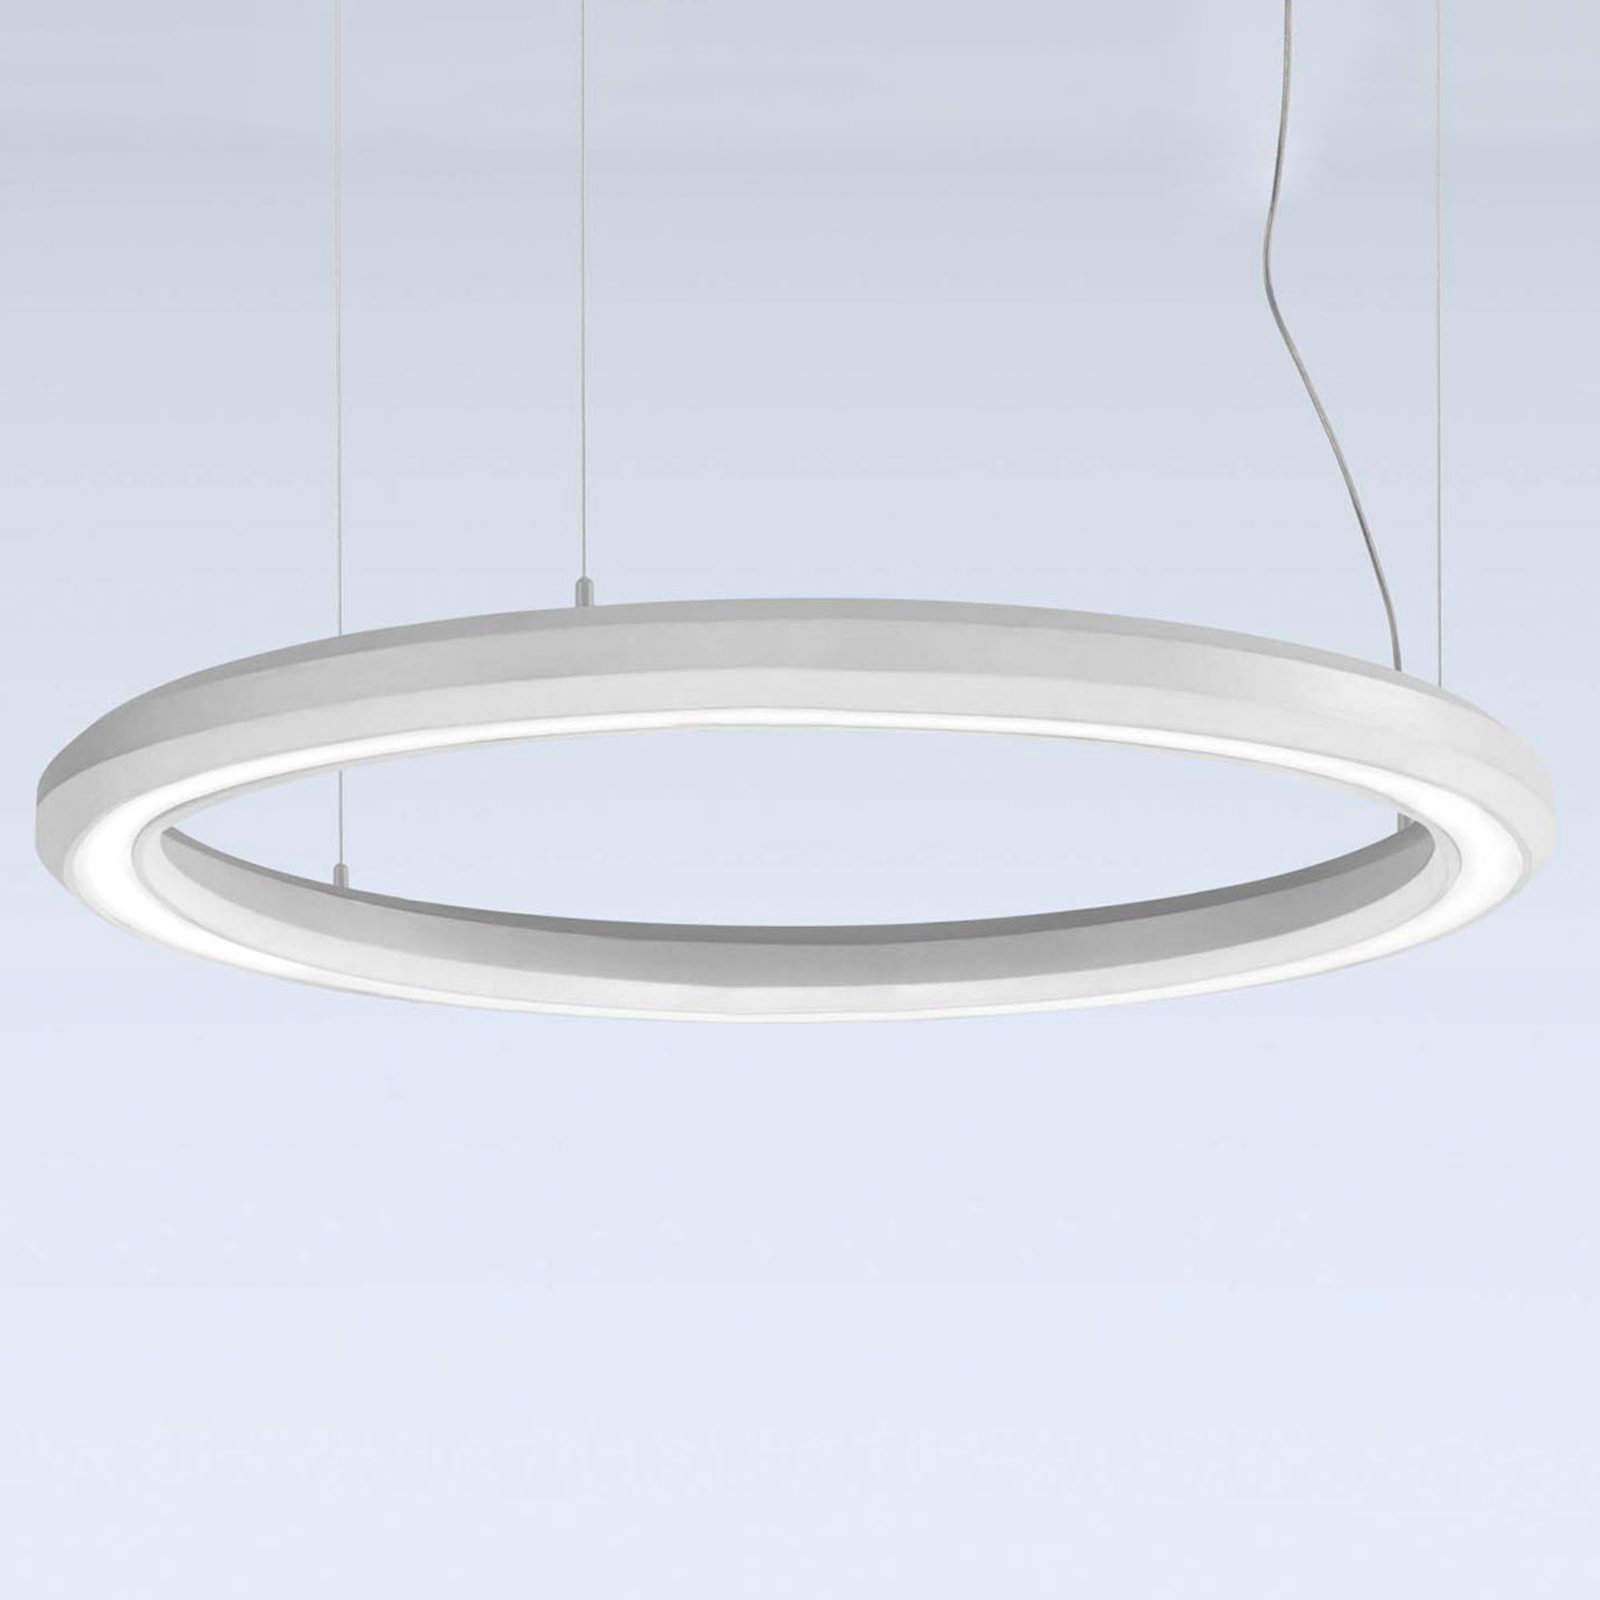 LED-riippuvalaisin Materica pohja Ø 90 cm valkoinen